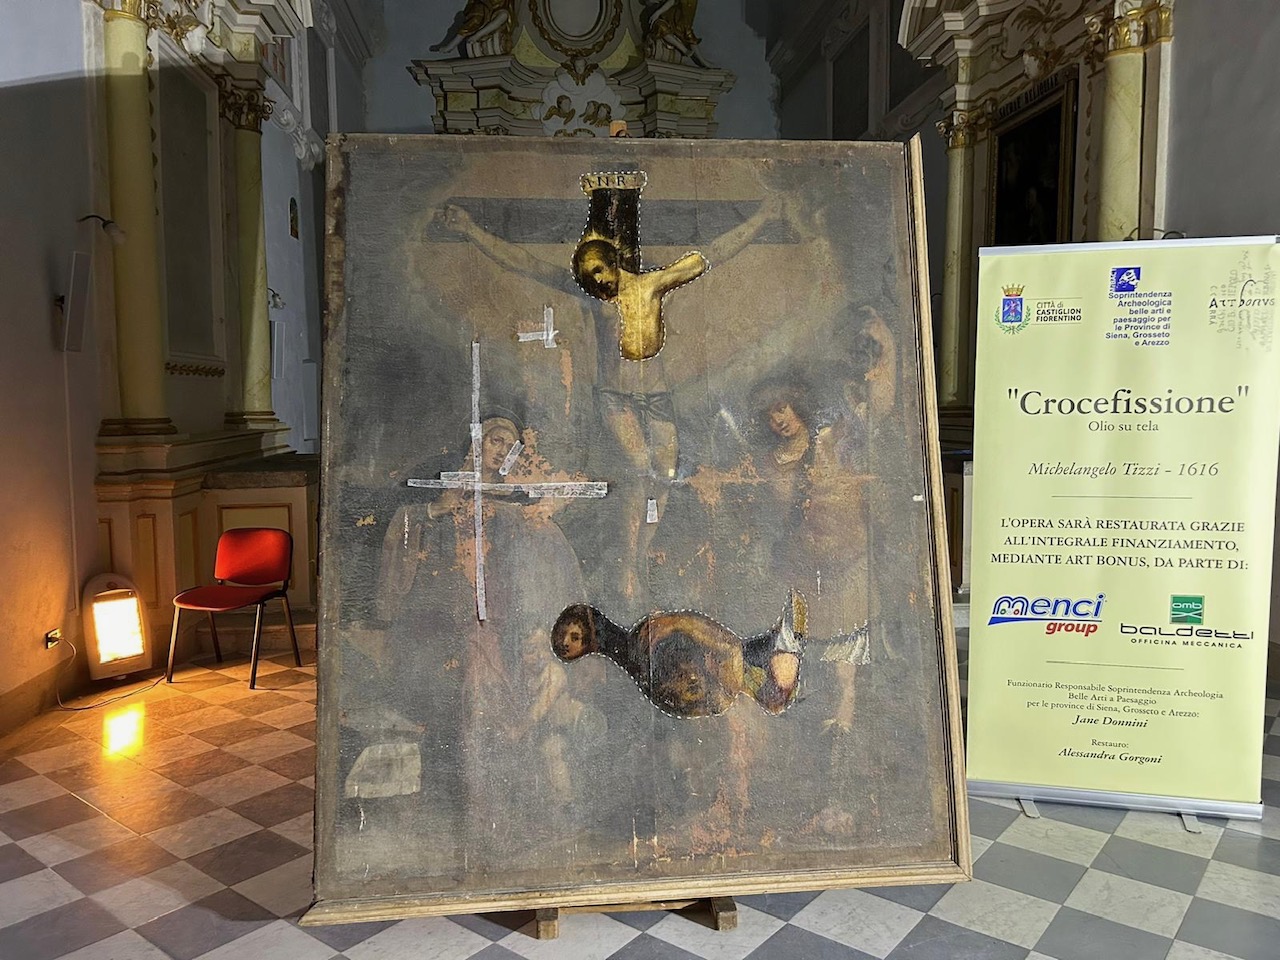 Art Bonus: al via il restauro della Crocefissione di Michelangelo Tizzi